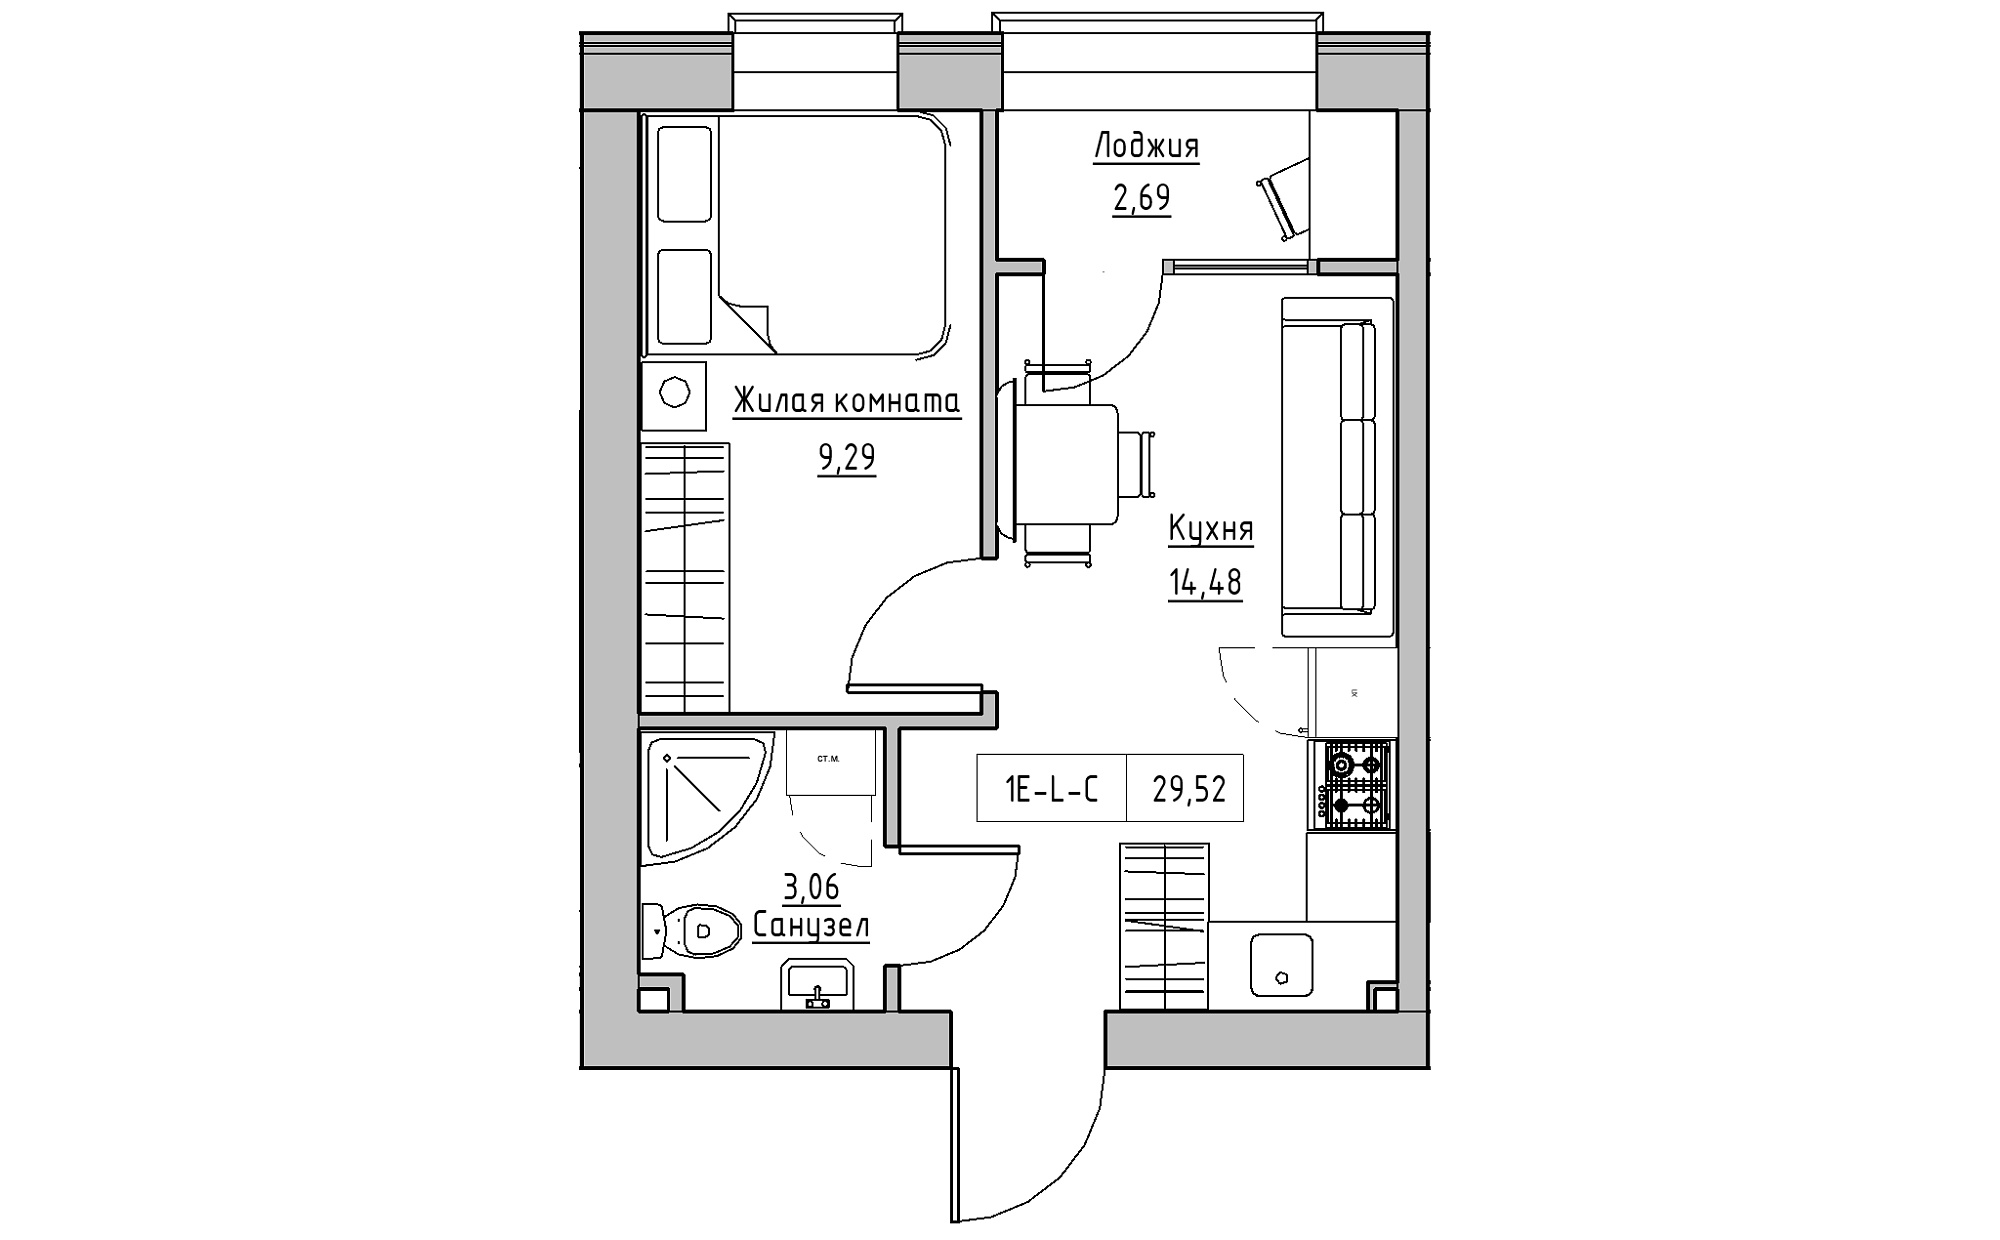 Планування 1-к квартира площею 29.52м2, KS-022-01/0006.